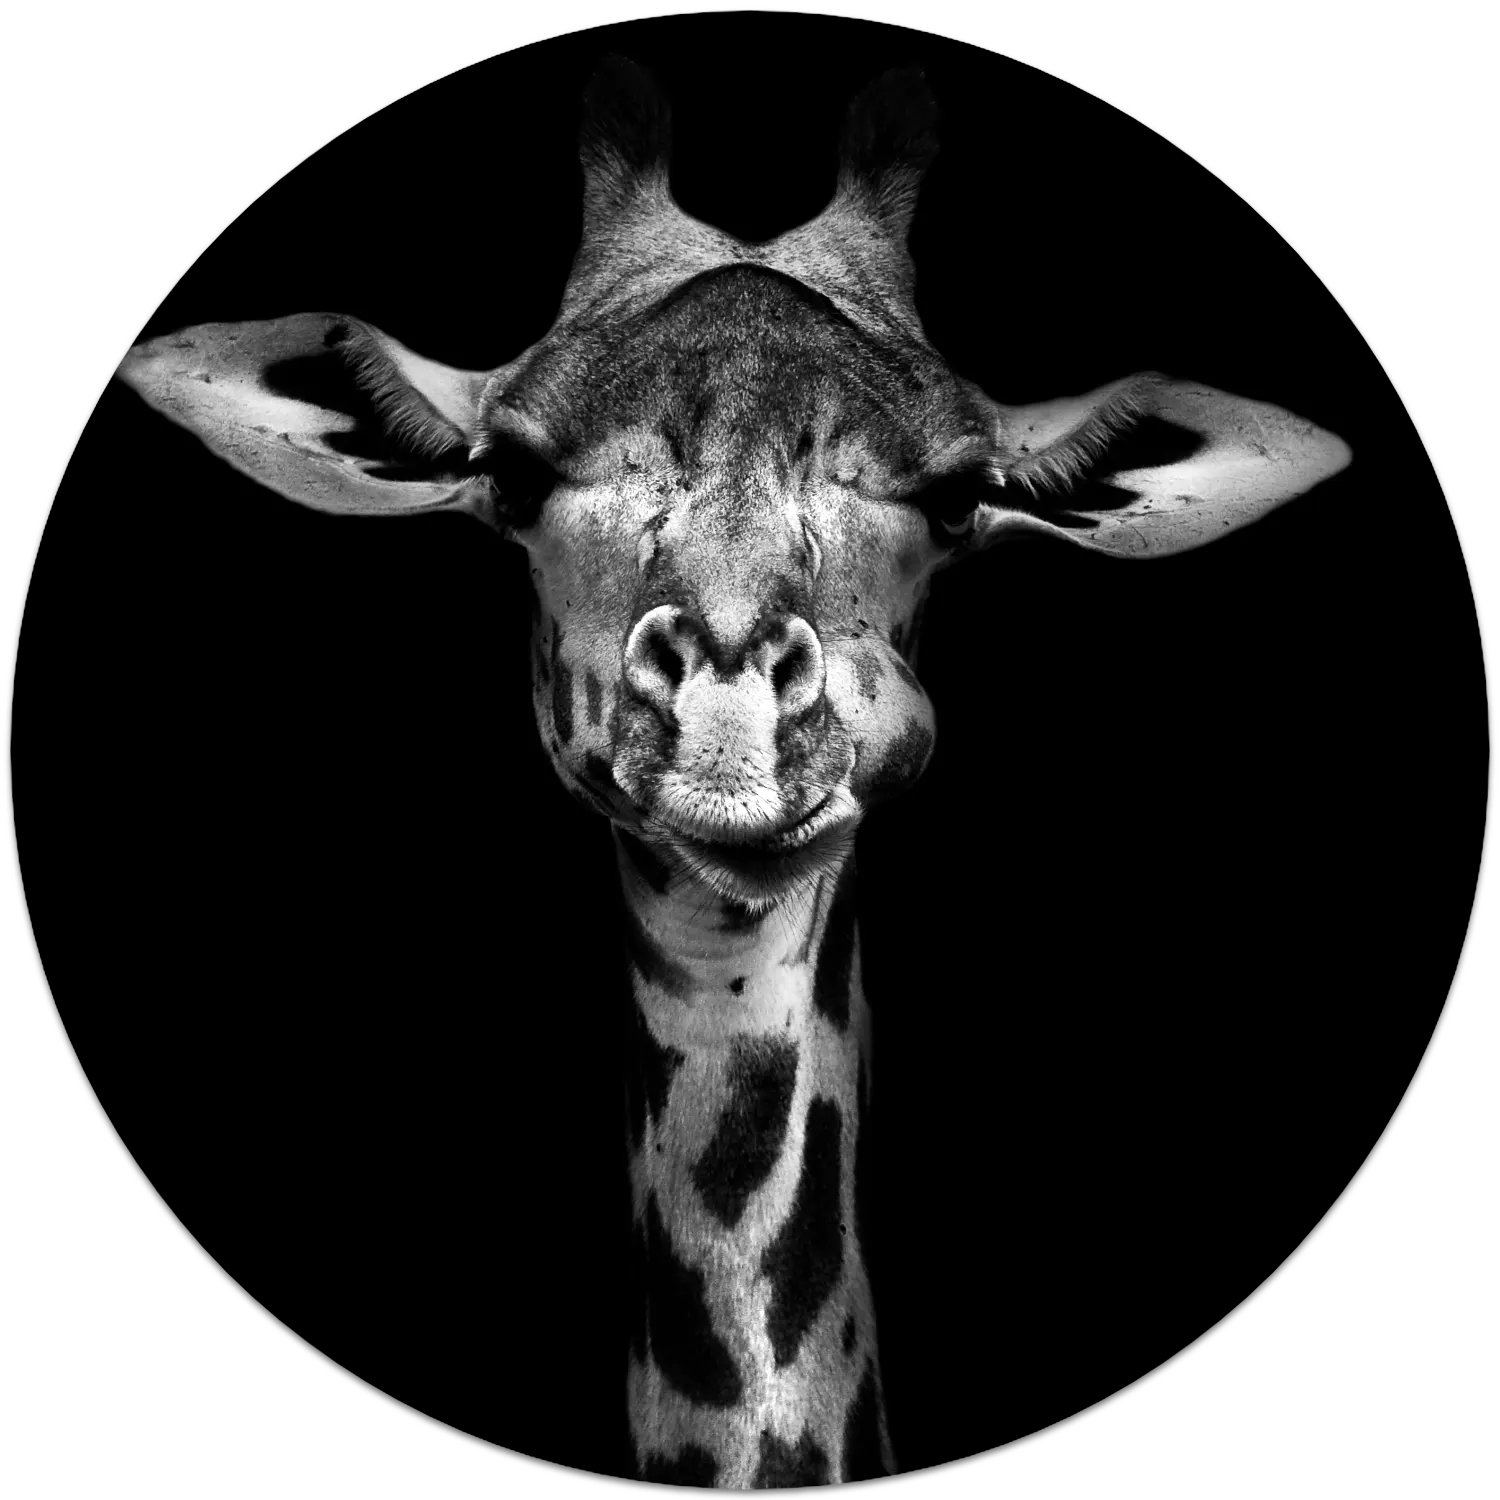 03Y4 - The Giraffe - Fotokunst Wandcirkel